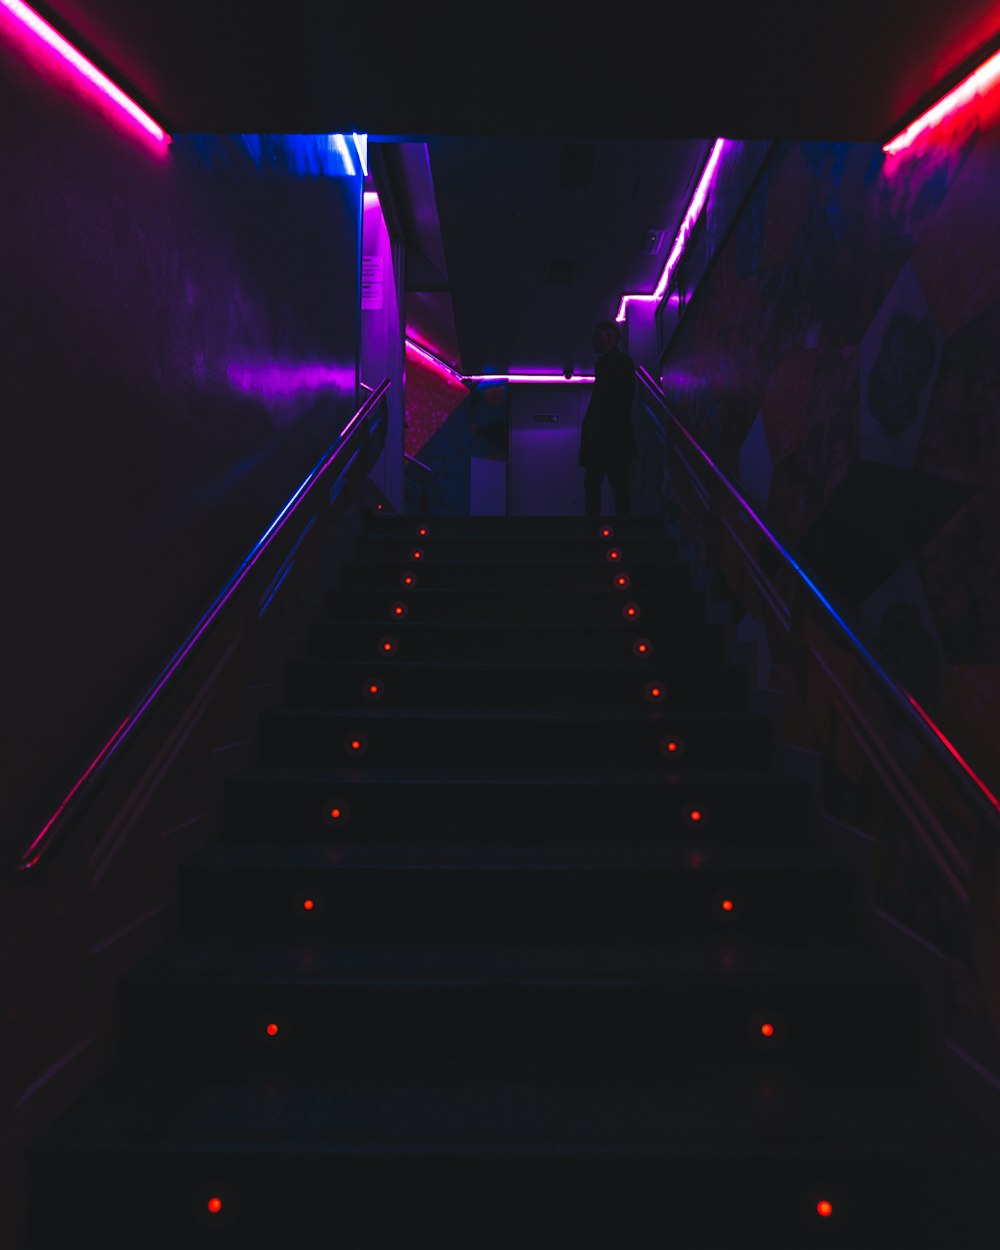 Schwarz-weiße Treppe mit lila Lichtern